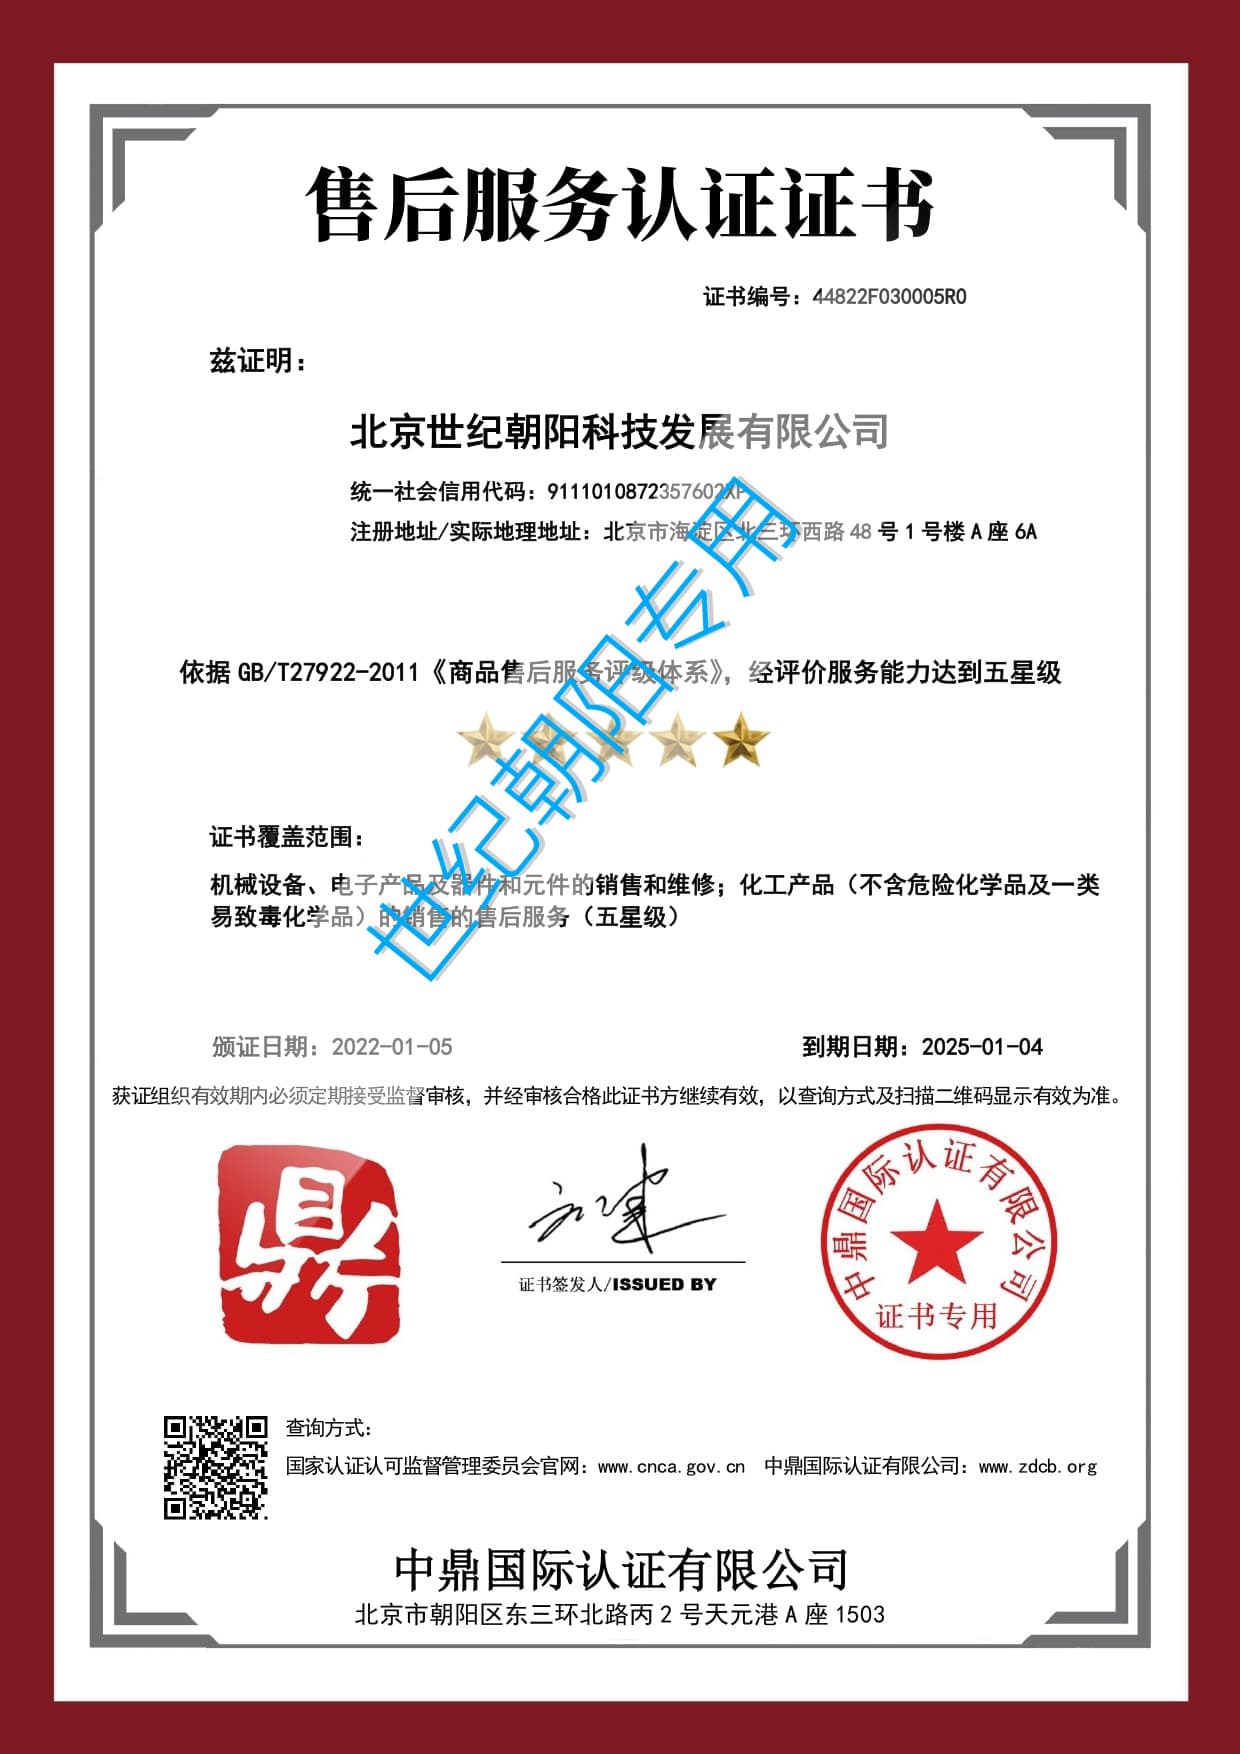 18-售后服务认证证书-北京世纪朝阳科技发展有限公司-min _副本-min